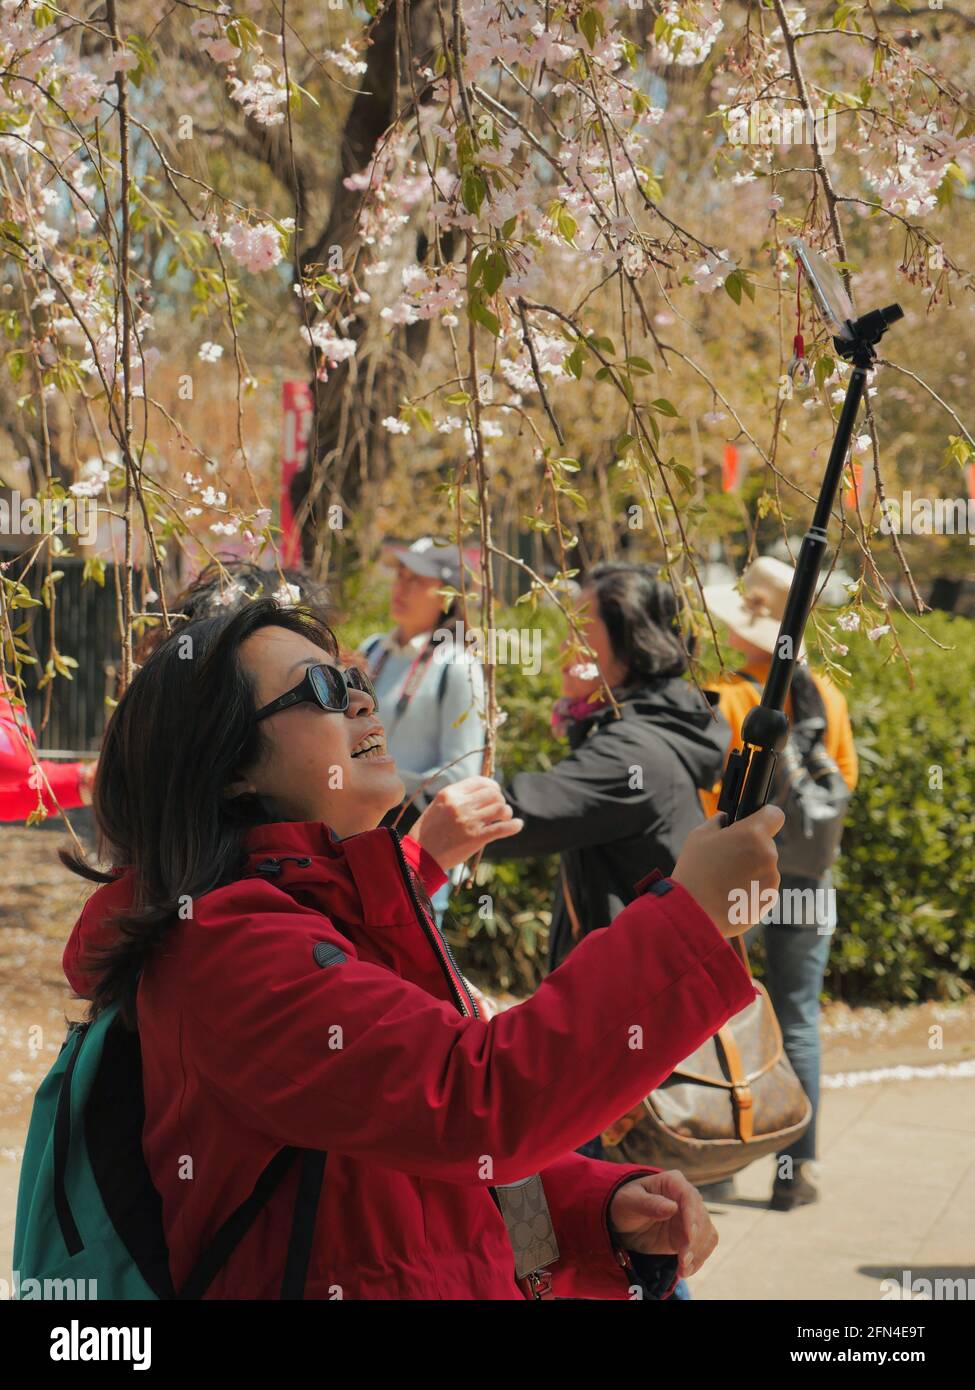 Eine Dame aus dem Tourismus macht ein Selfie in einem japanischen Park. Lächelnde Frau mit Sonnenbrille und einem Selfie-Stick unter einem blühenden Kirschbaum. Japanischer Lebensstil Stockfoto